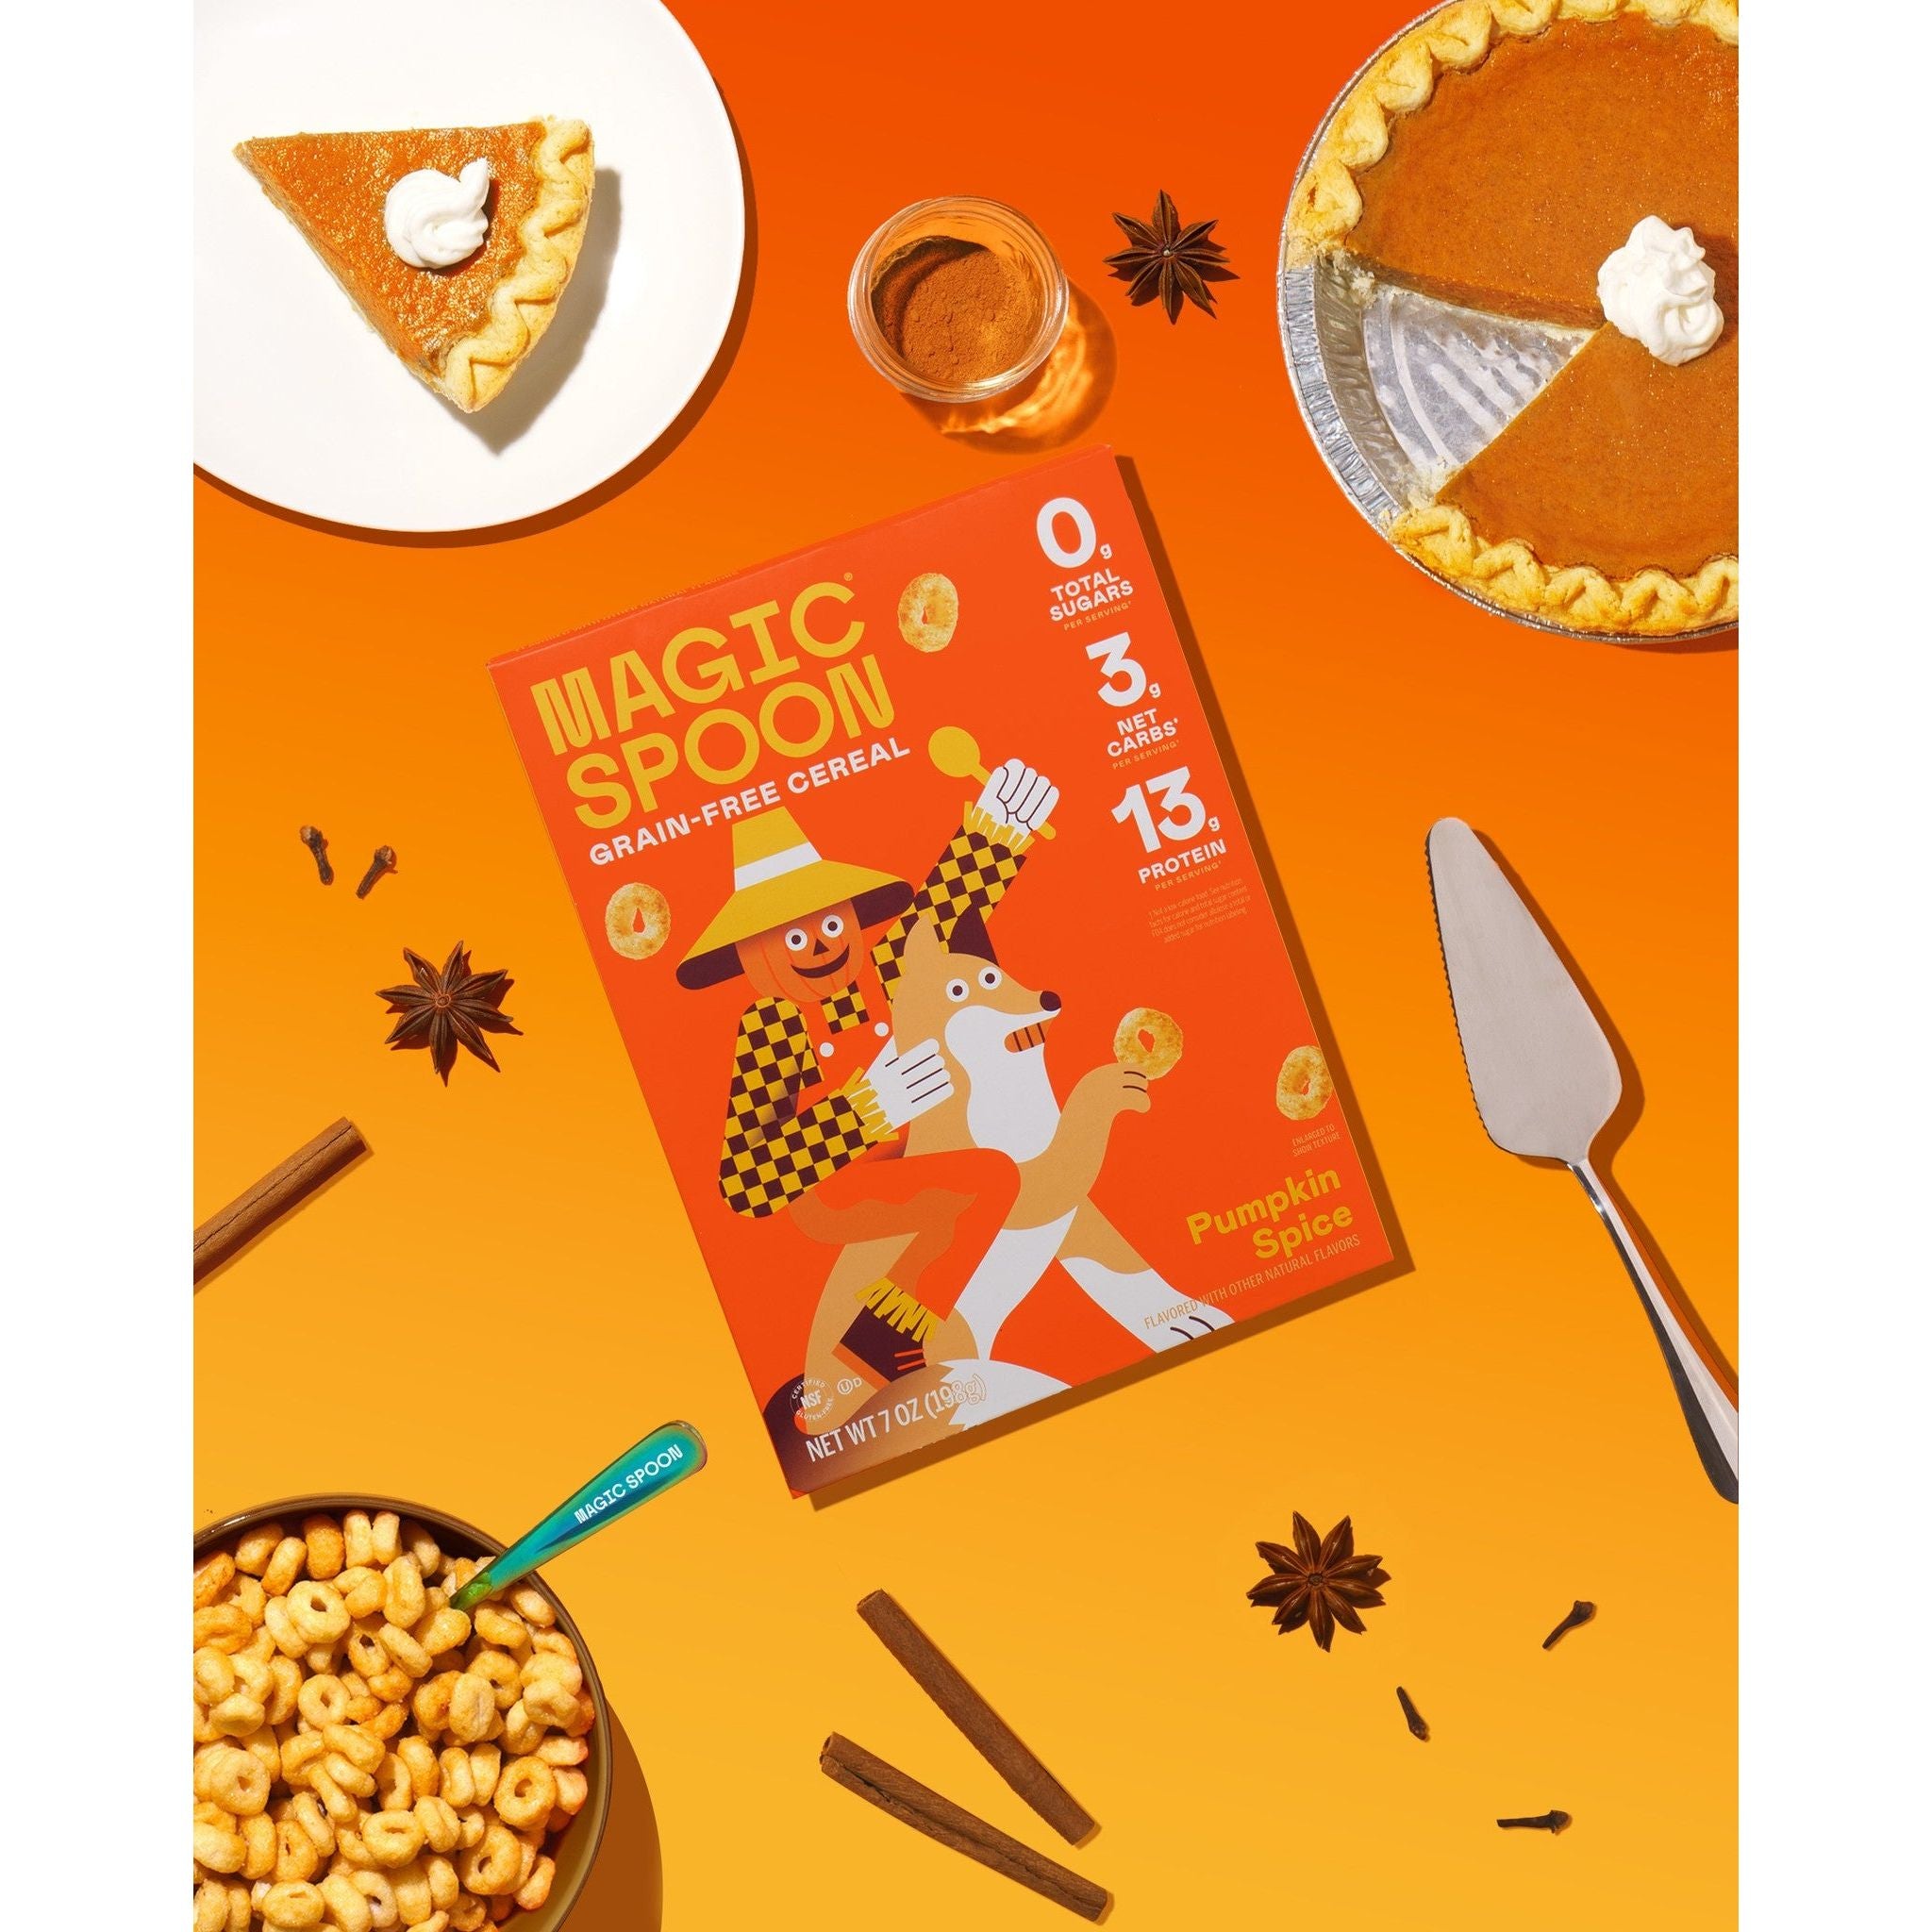 Magic Spoon Keto Protein Cereal (1 box)